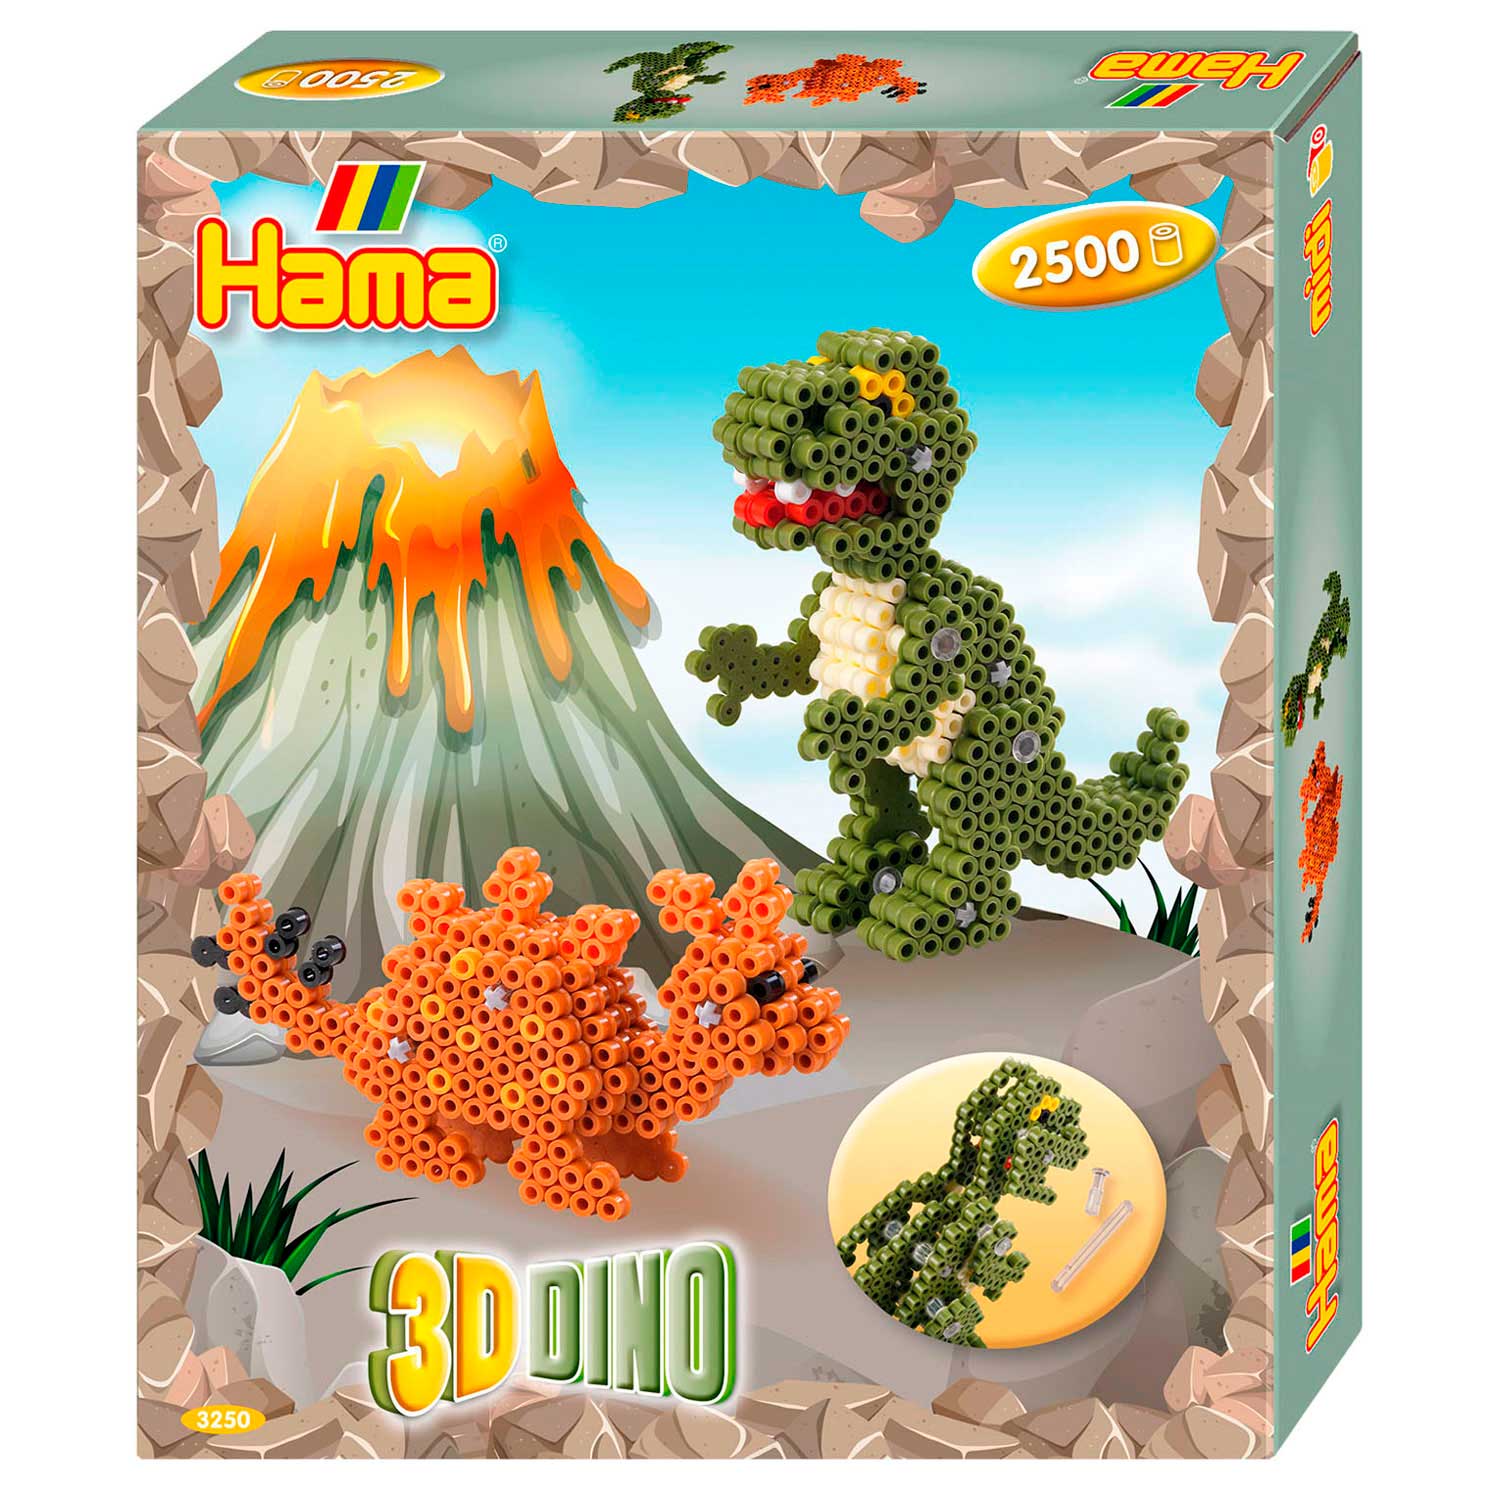 Hama Set de perles à repasser - Dino 3D, 2500 pcs.